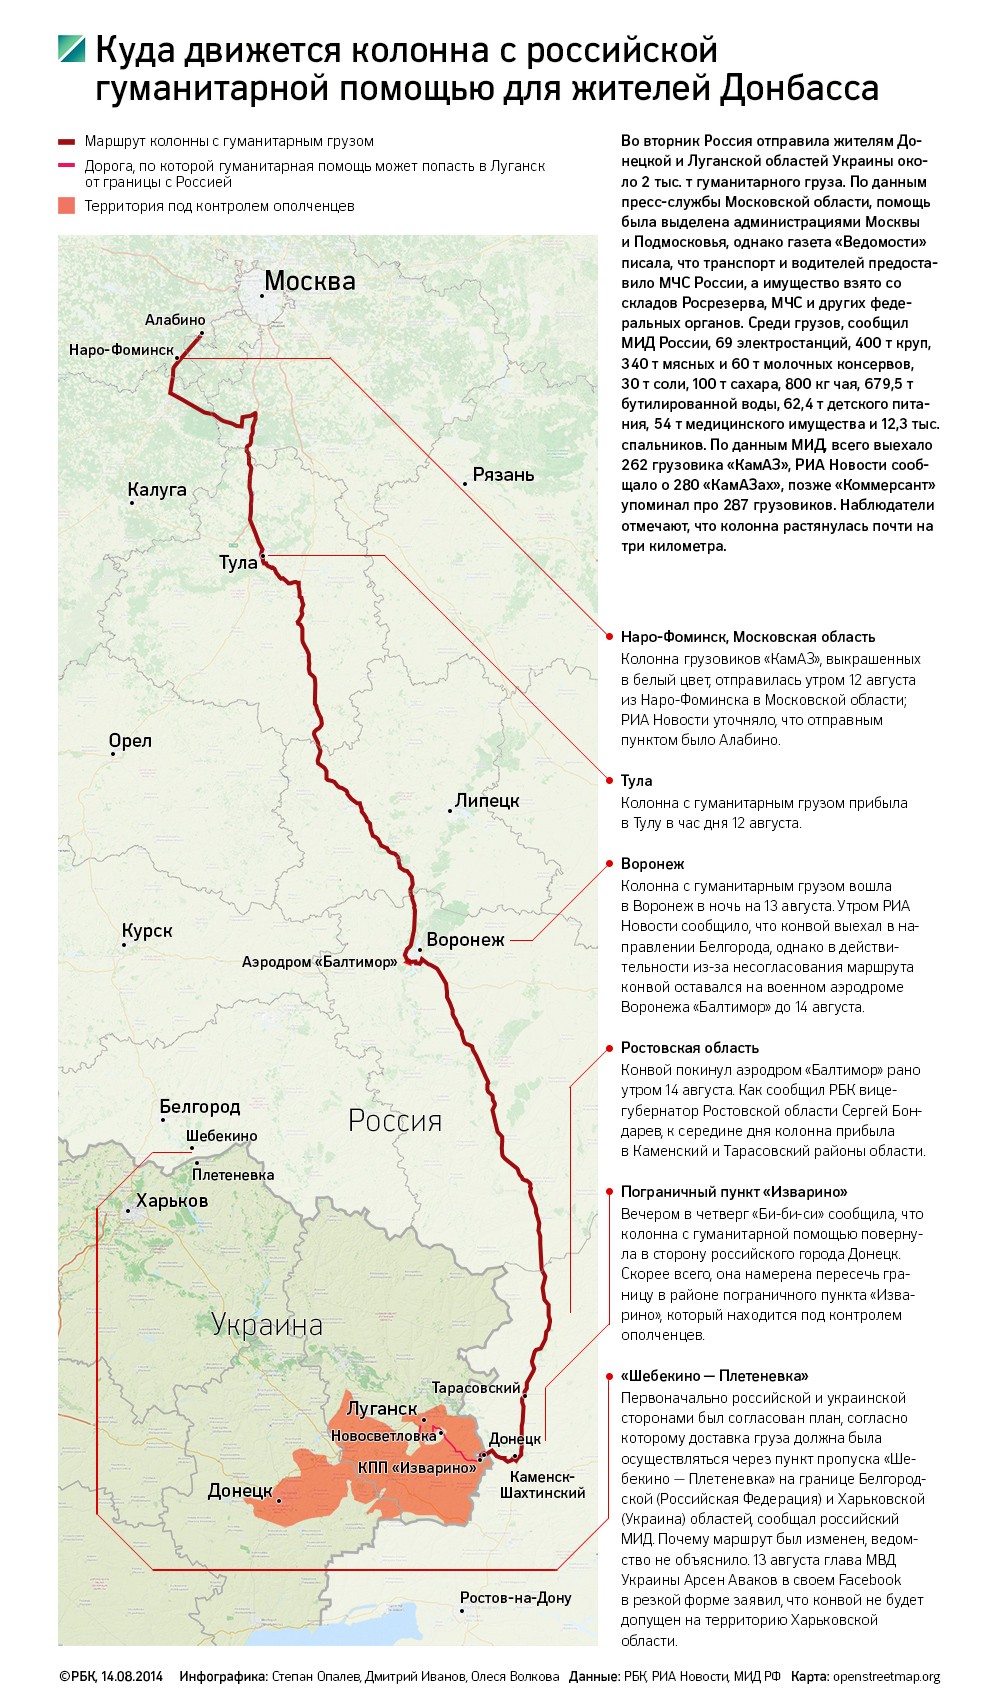 Гуманитарный конвой достиг украинской границы в районе КПП «Изварино»